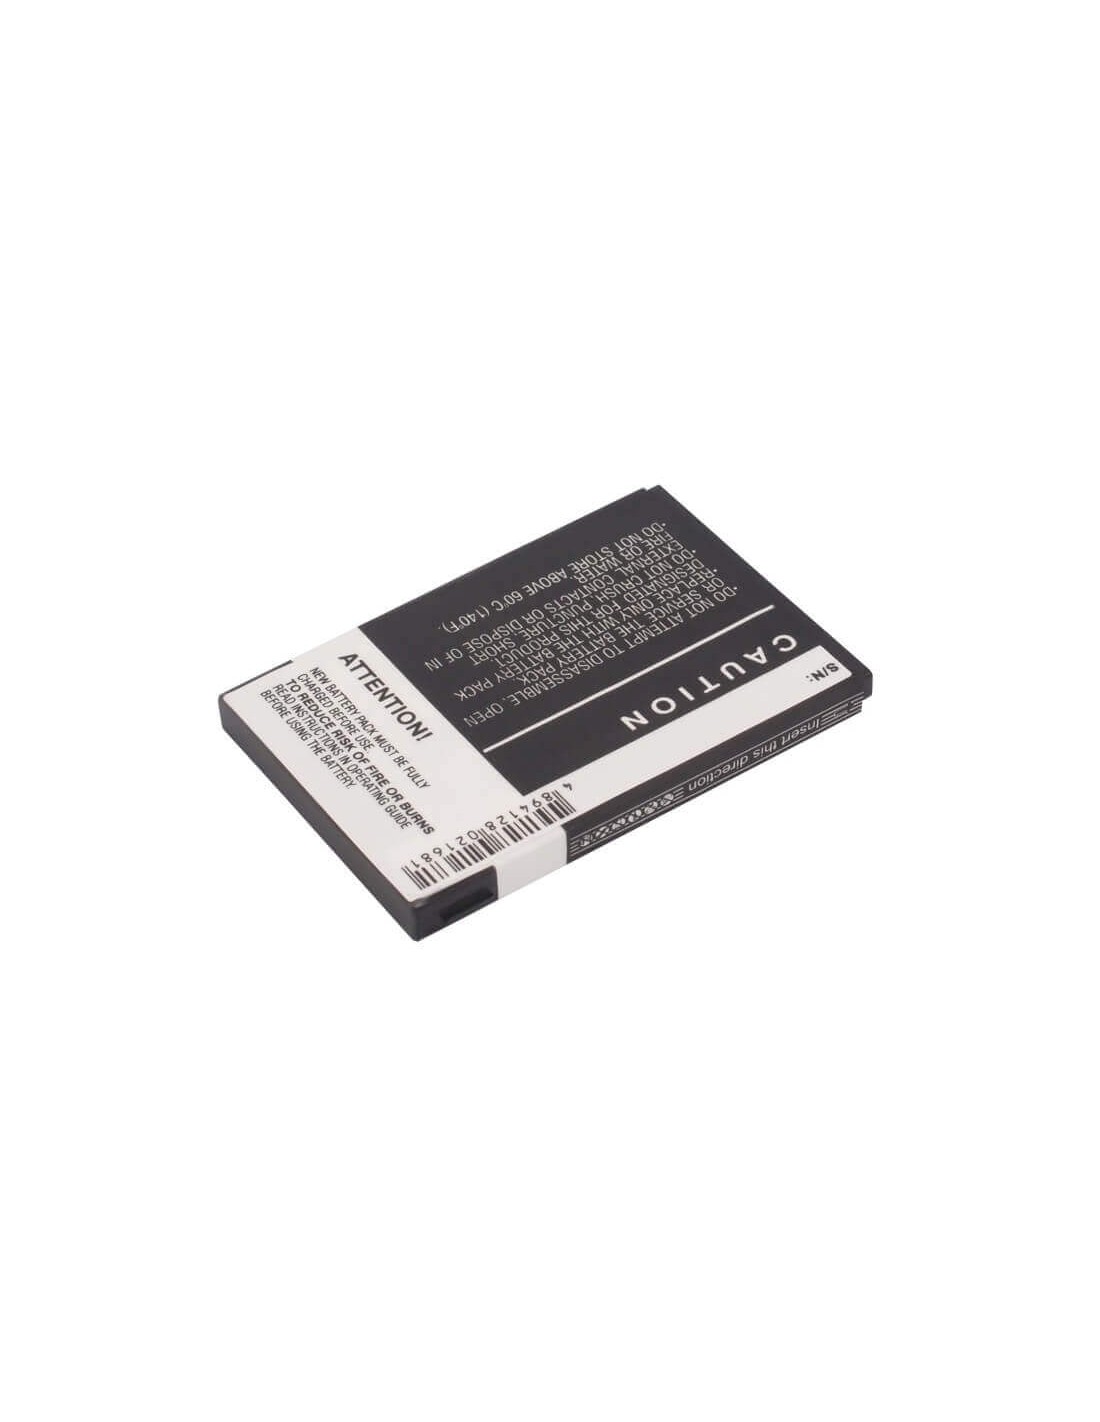 Battery for Fujitsu Pocket Loox N100, Pocket Loox N110, 3.7V, 1100mAh - 4.07Wh